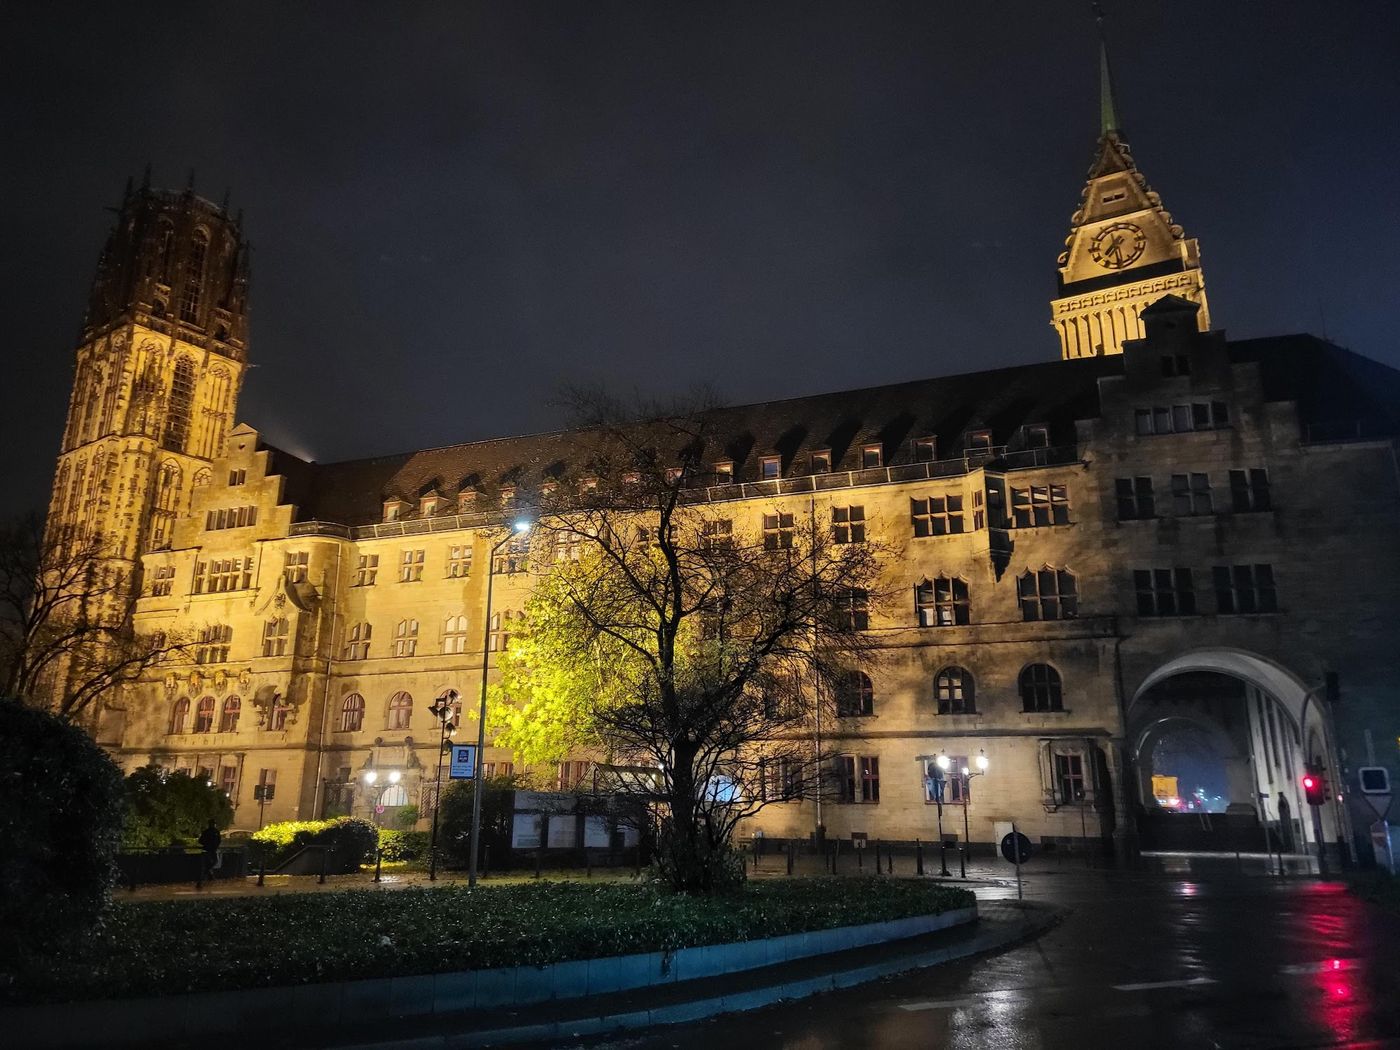 Mittelalterliches Duisburg: Eine Zeitreise durch Ausgrabungen